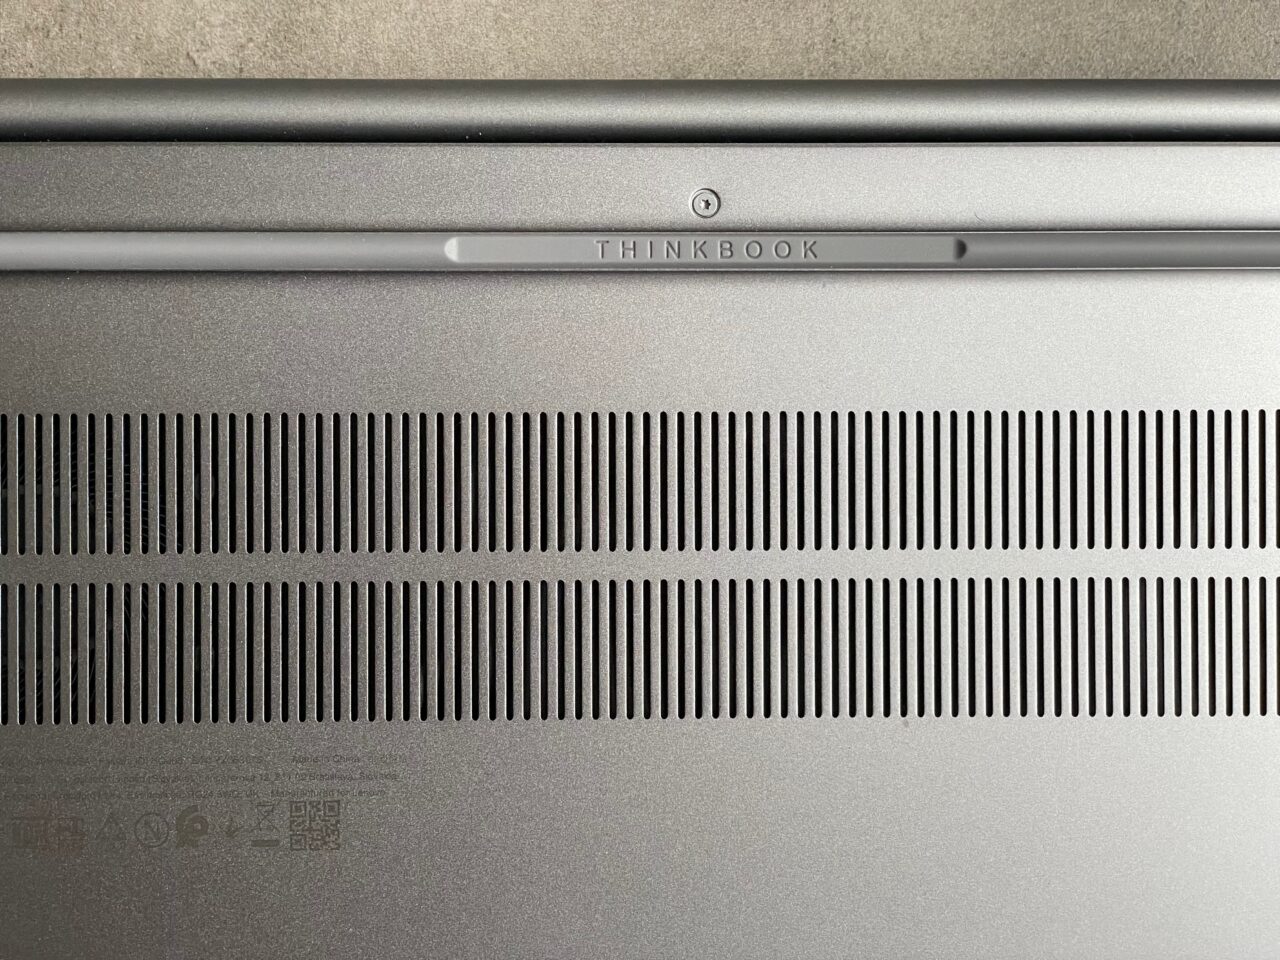 Górna część srebrnego laptopa ThinkBook z charakterystycznym napisem i szczelinami wentylacyjnymi.